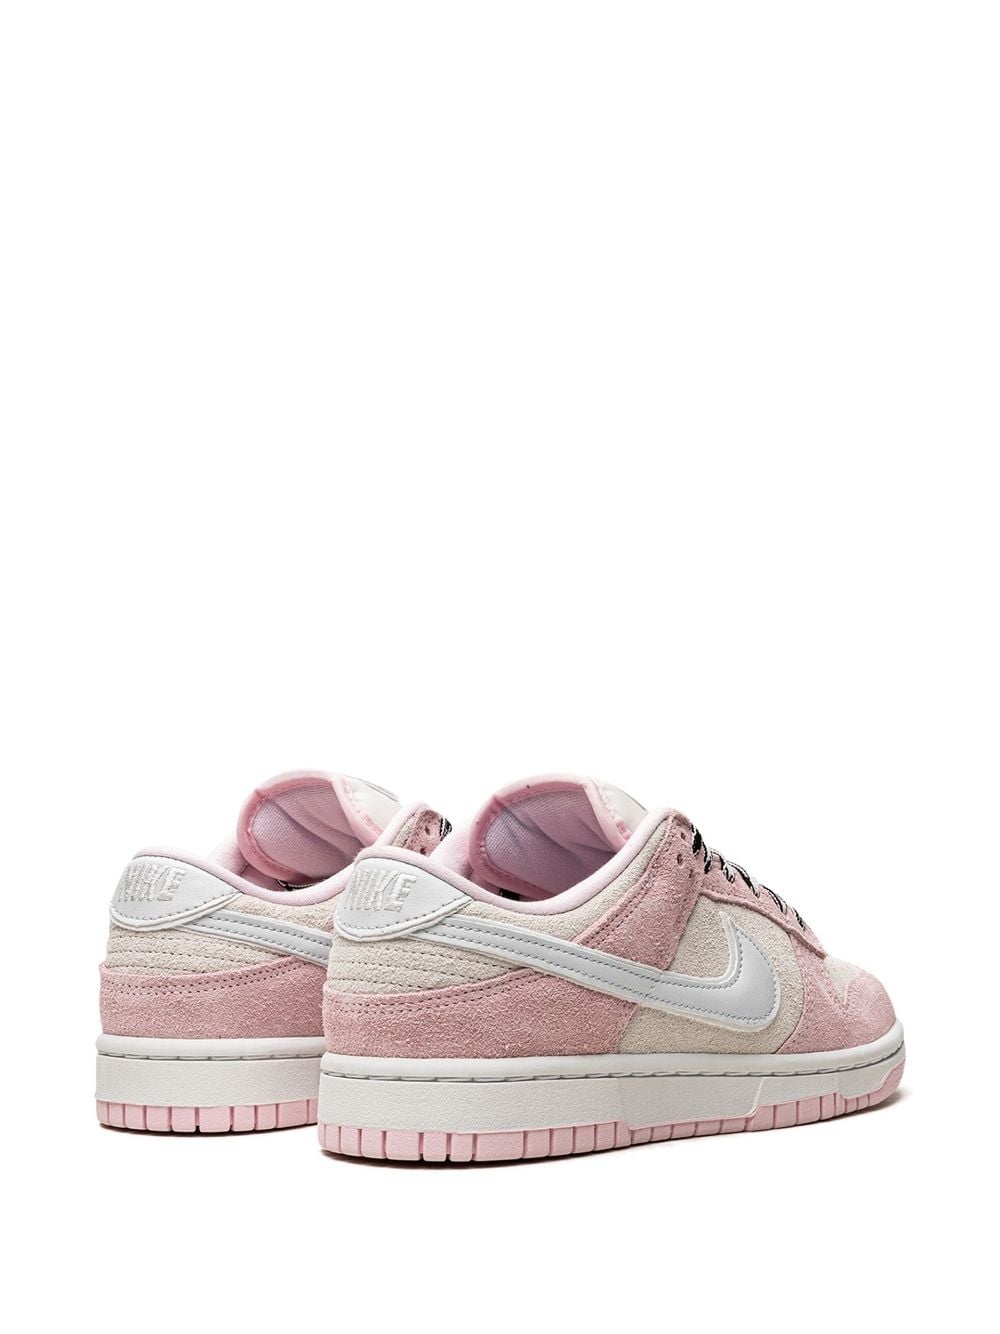 Dunk Low LX "Pink Foam" sneakers - 3